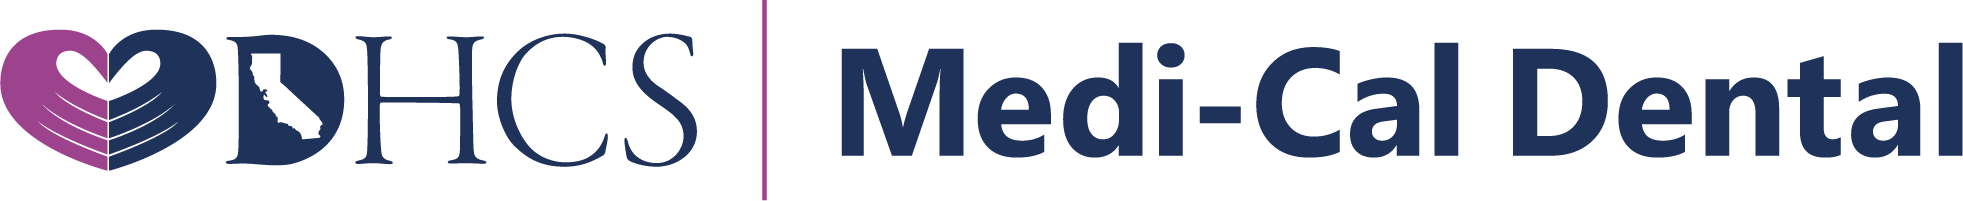 DHCS Medi-Cal Dental Logo